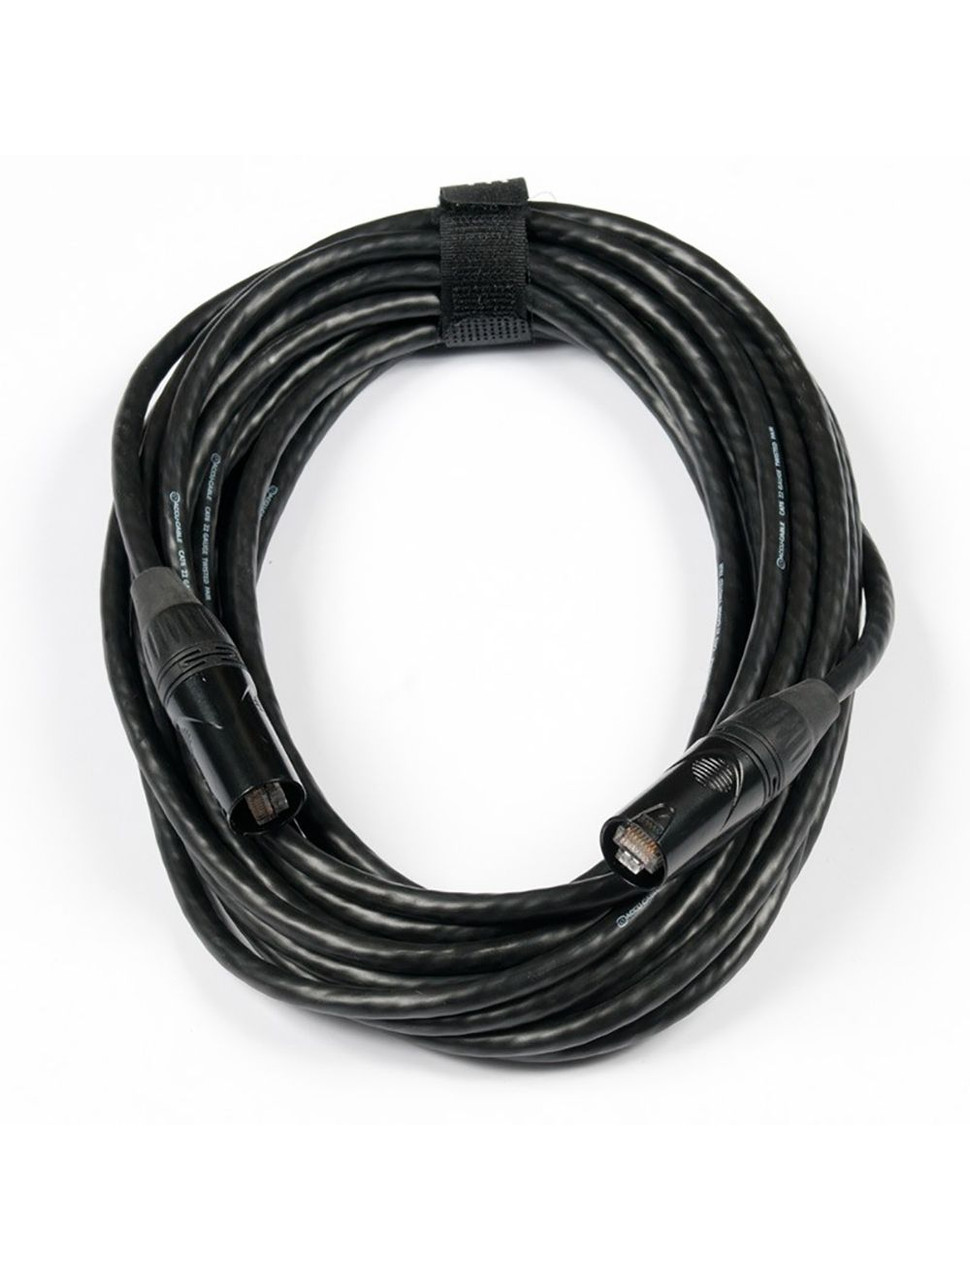 ADJ CAT310 10' Data Cable (CAT310)